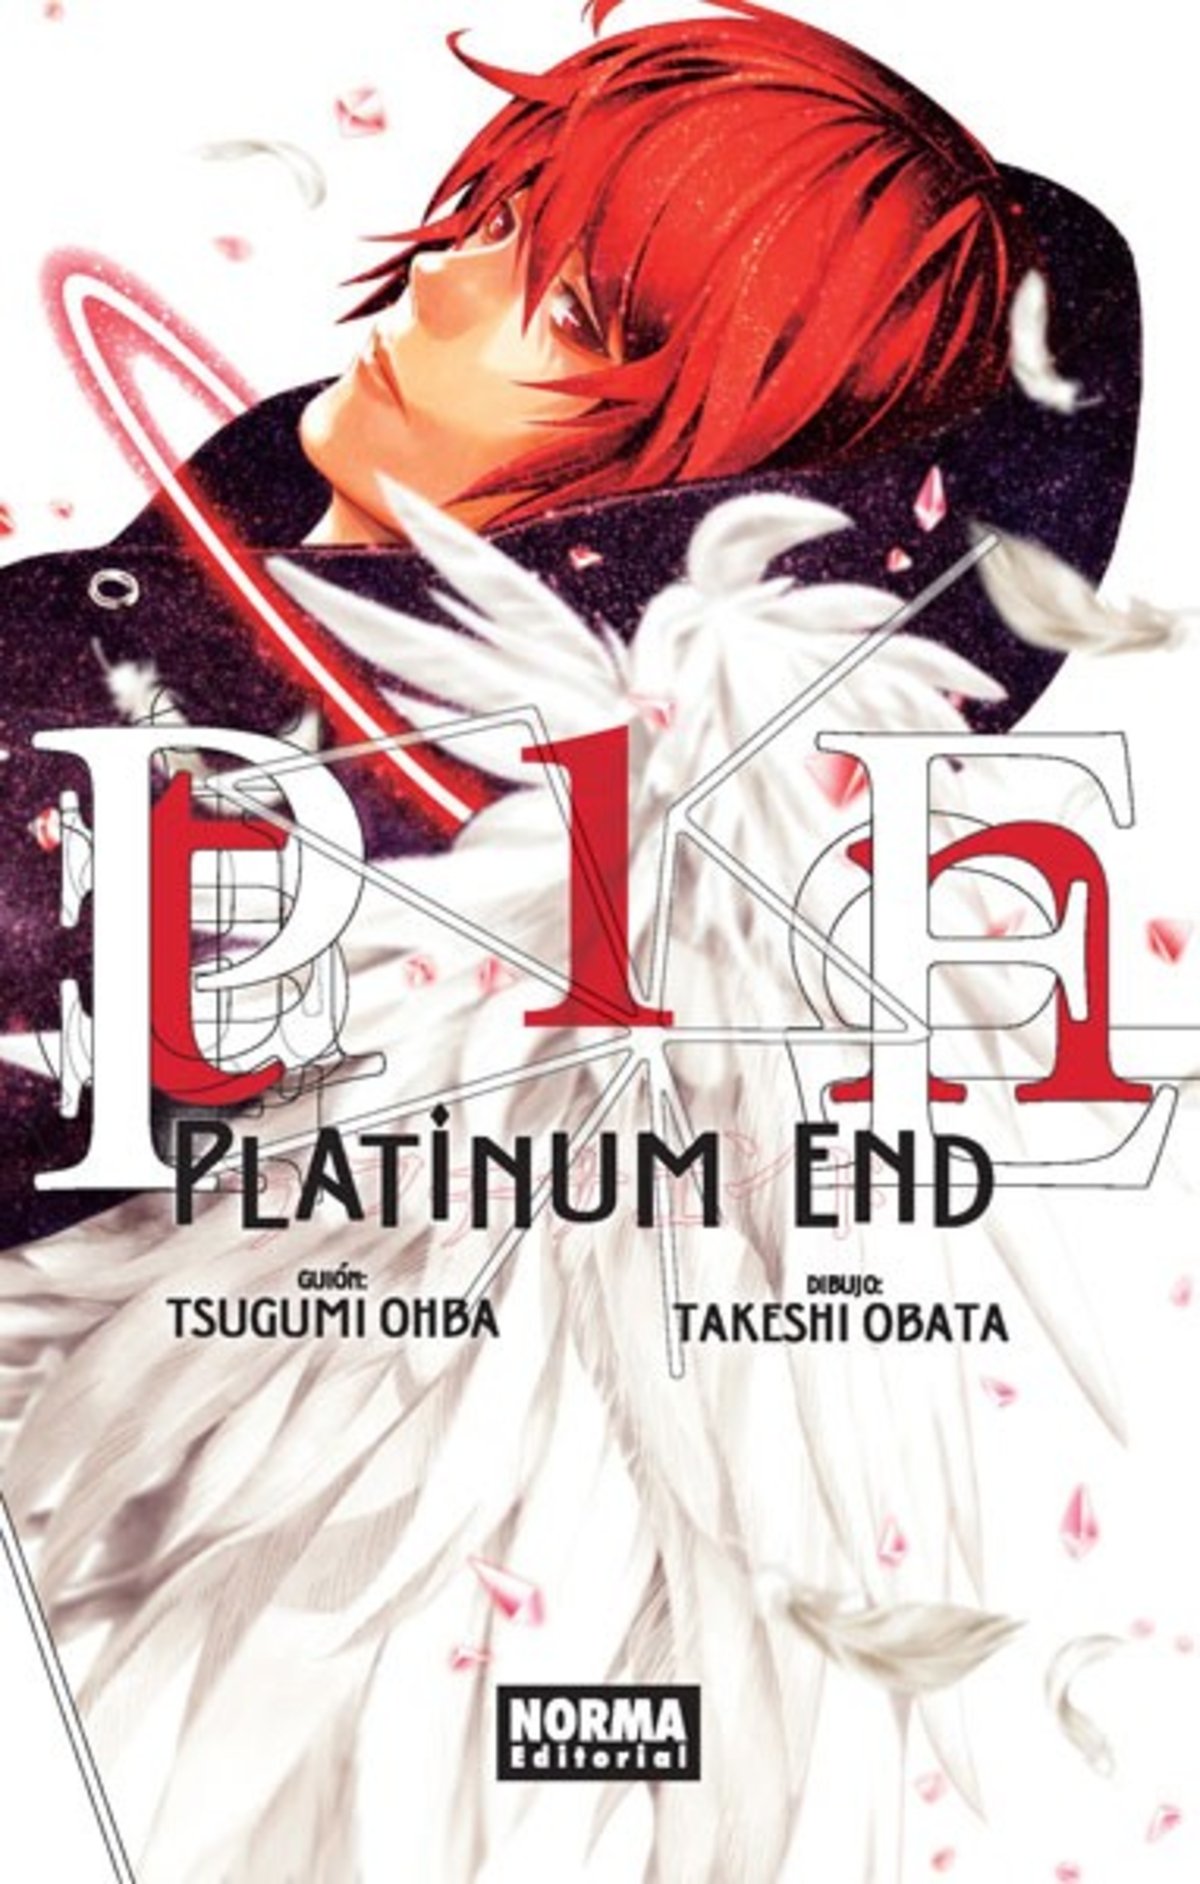 No Solo Gaming: Platinum End, el nuevo manga de los autores de Death Note